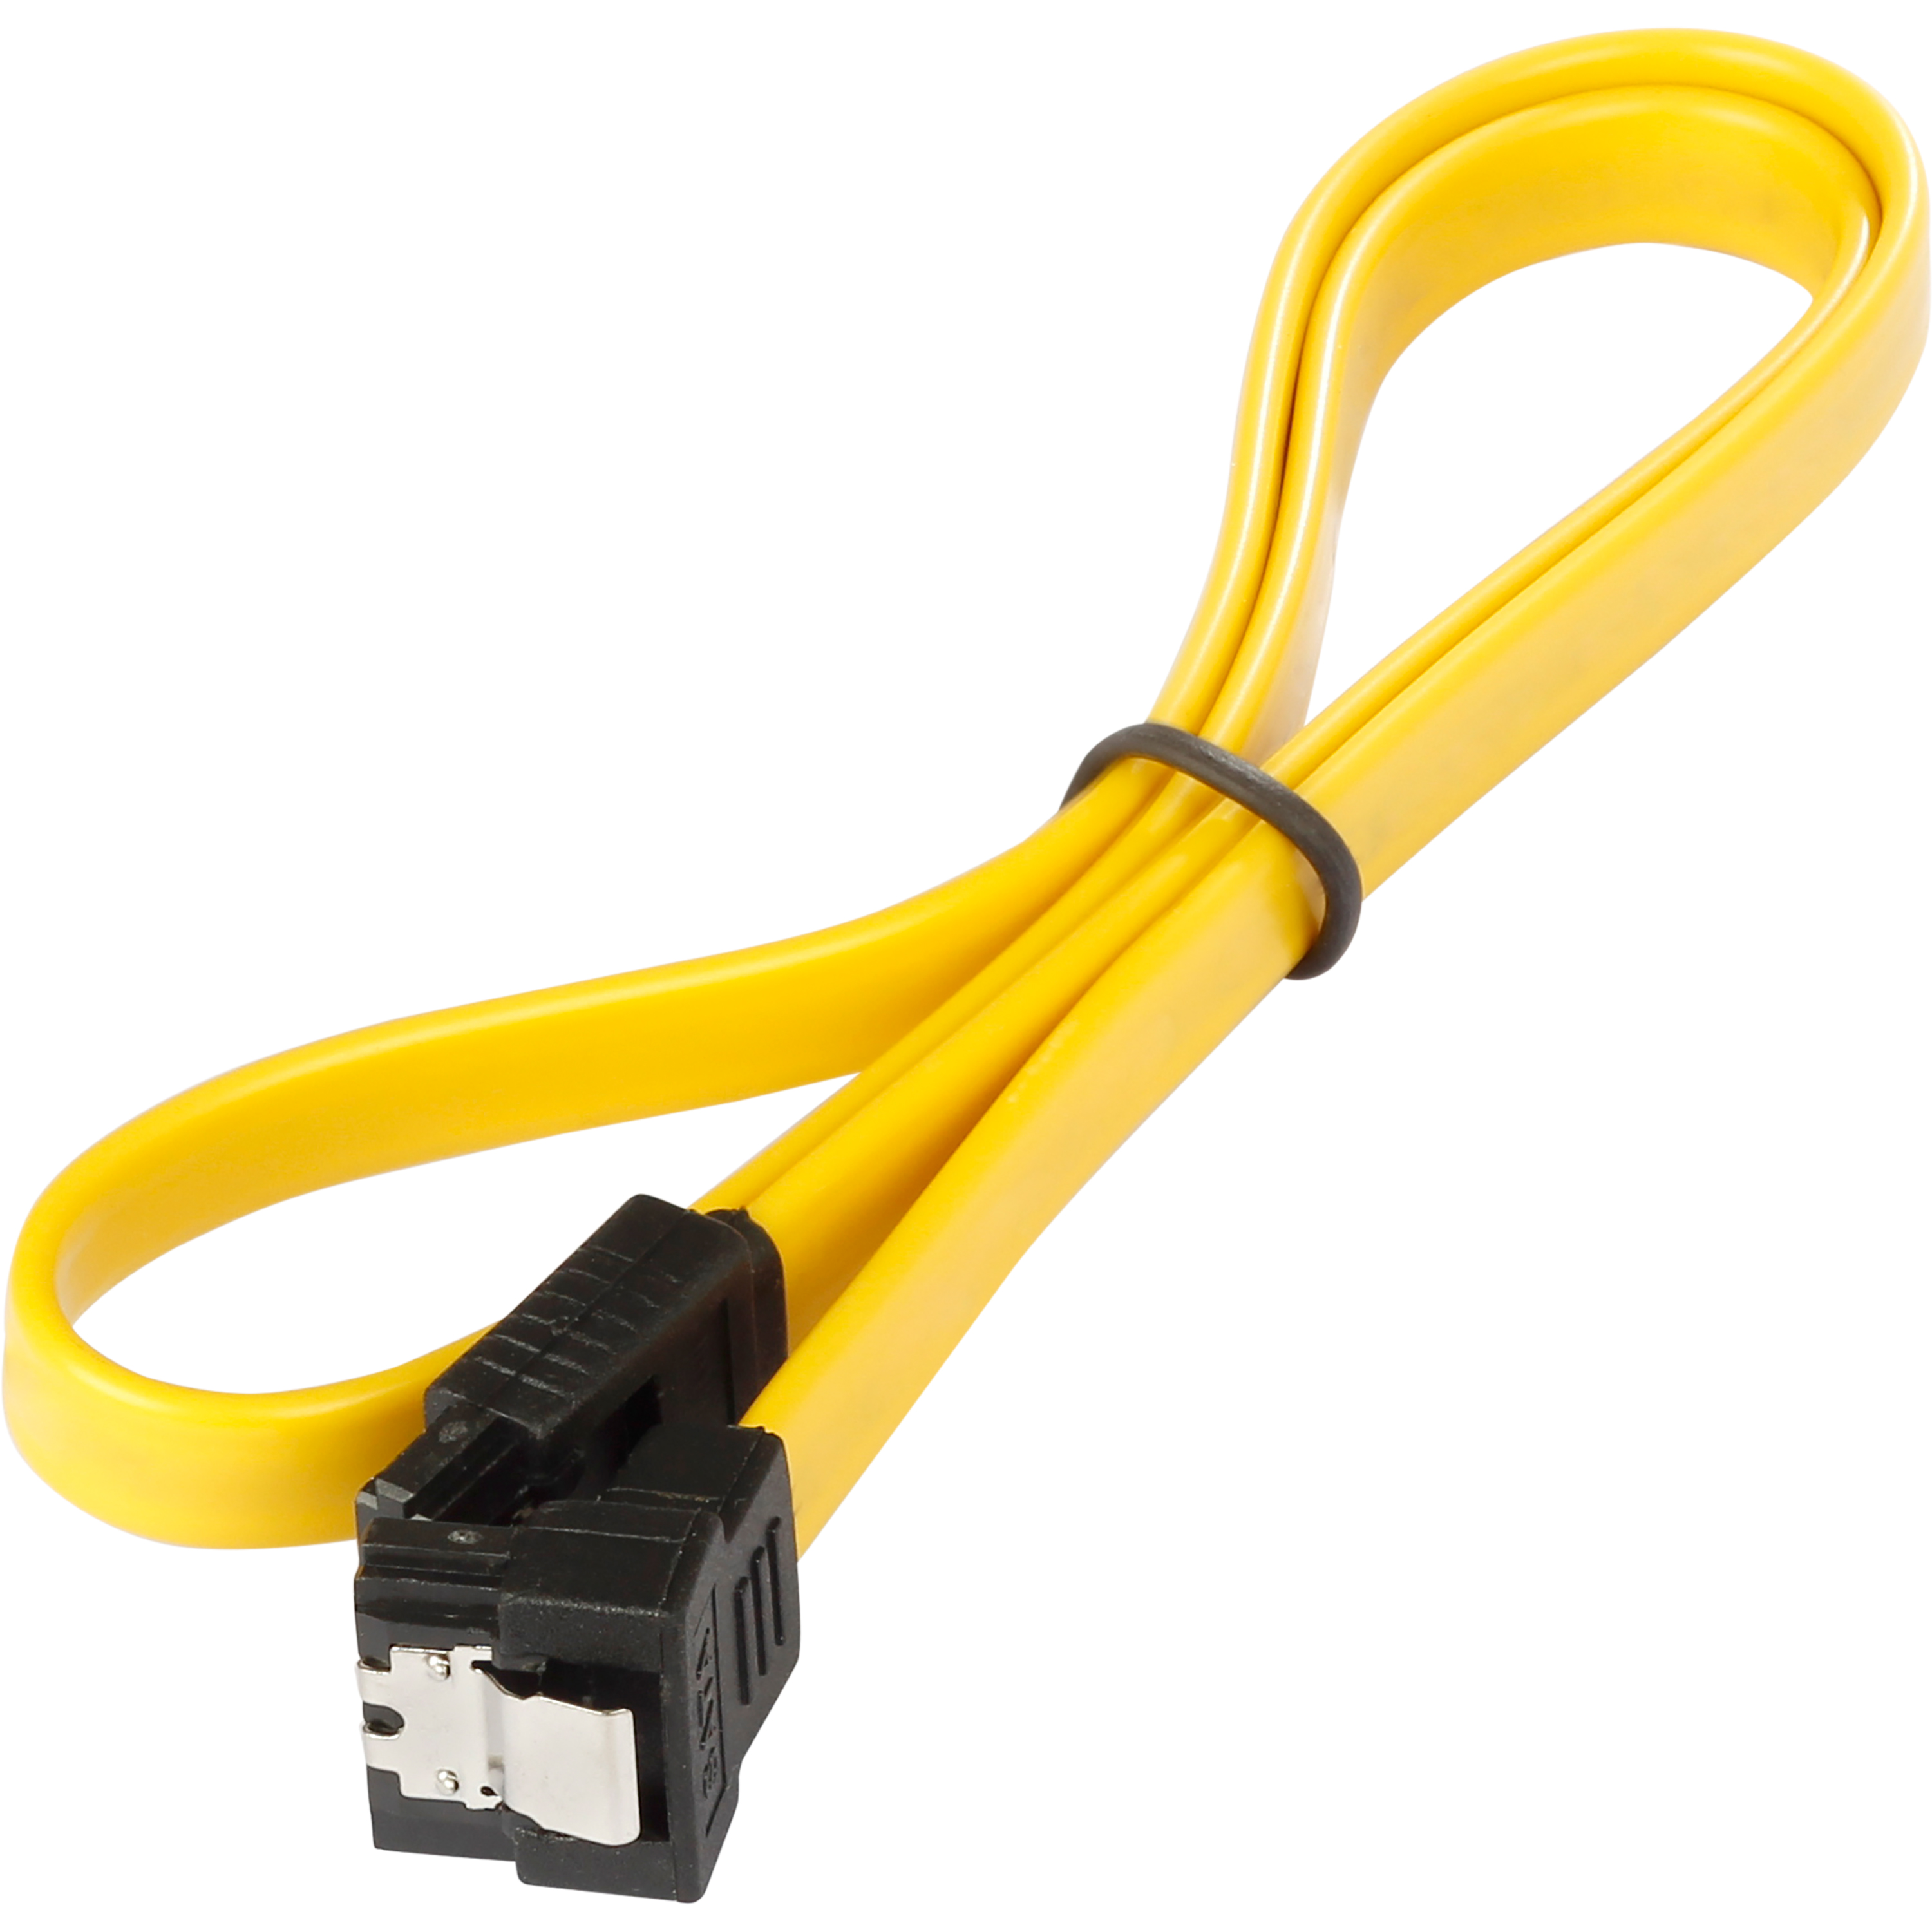 Sata 3 Kabel 0,5 m für SSD/HDD, Stecker gerade/gewinkelt, gelb